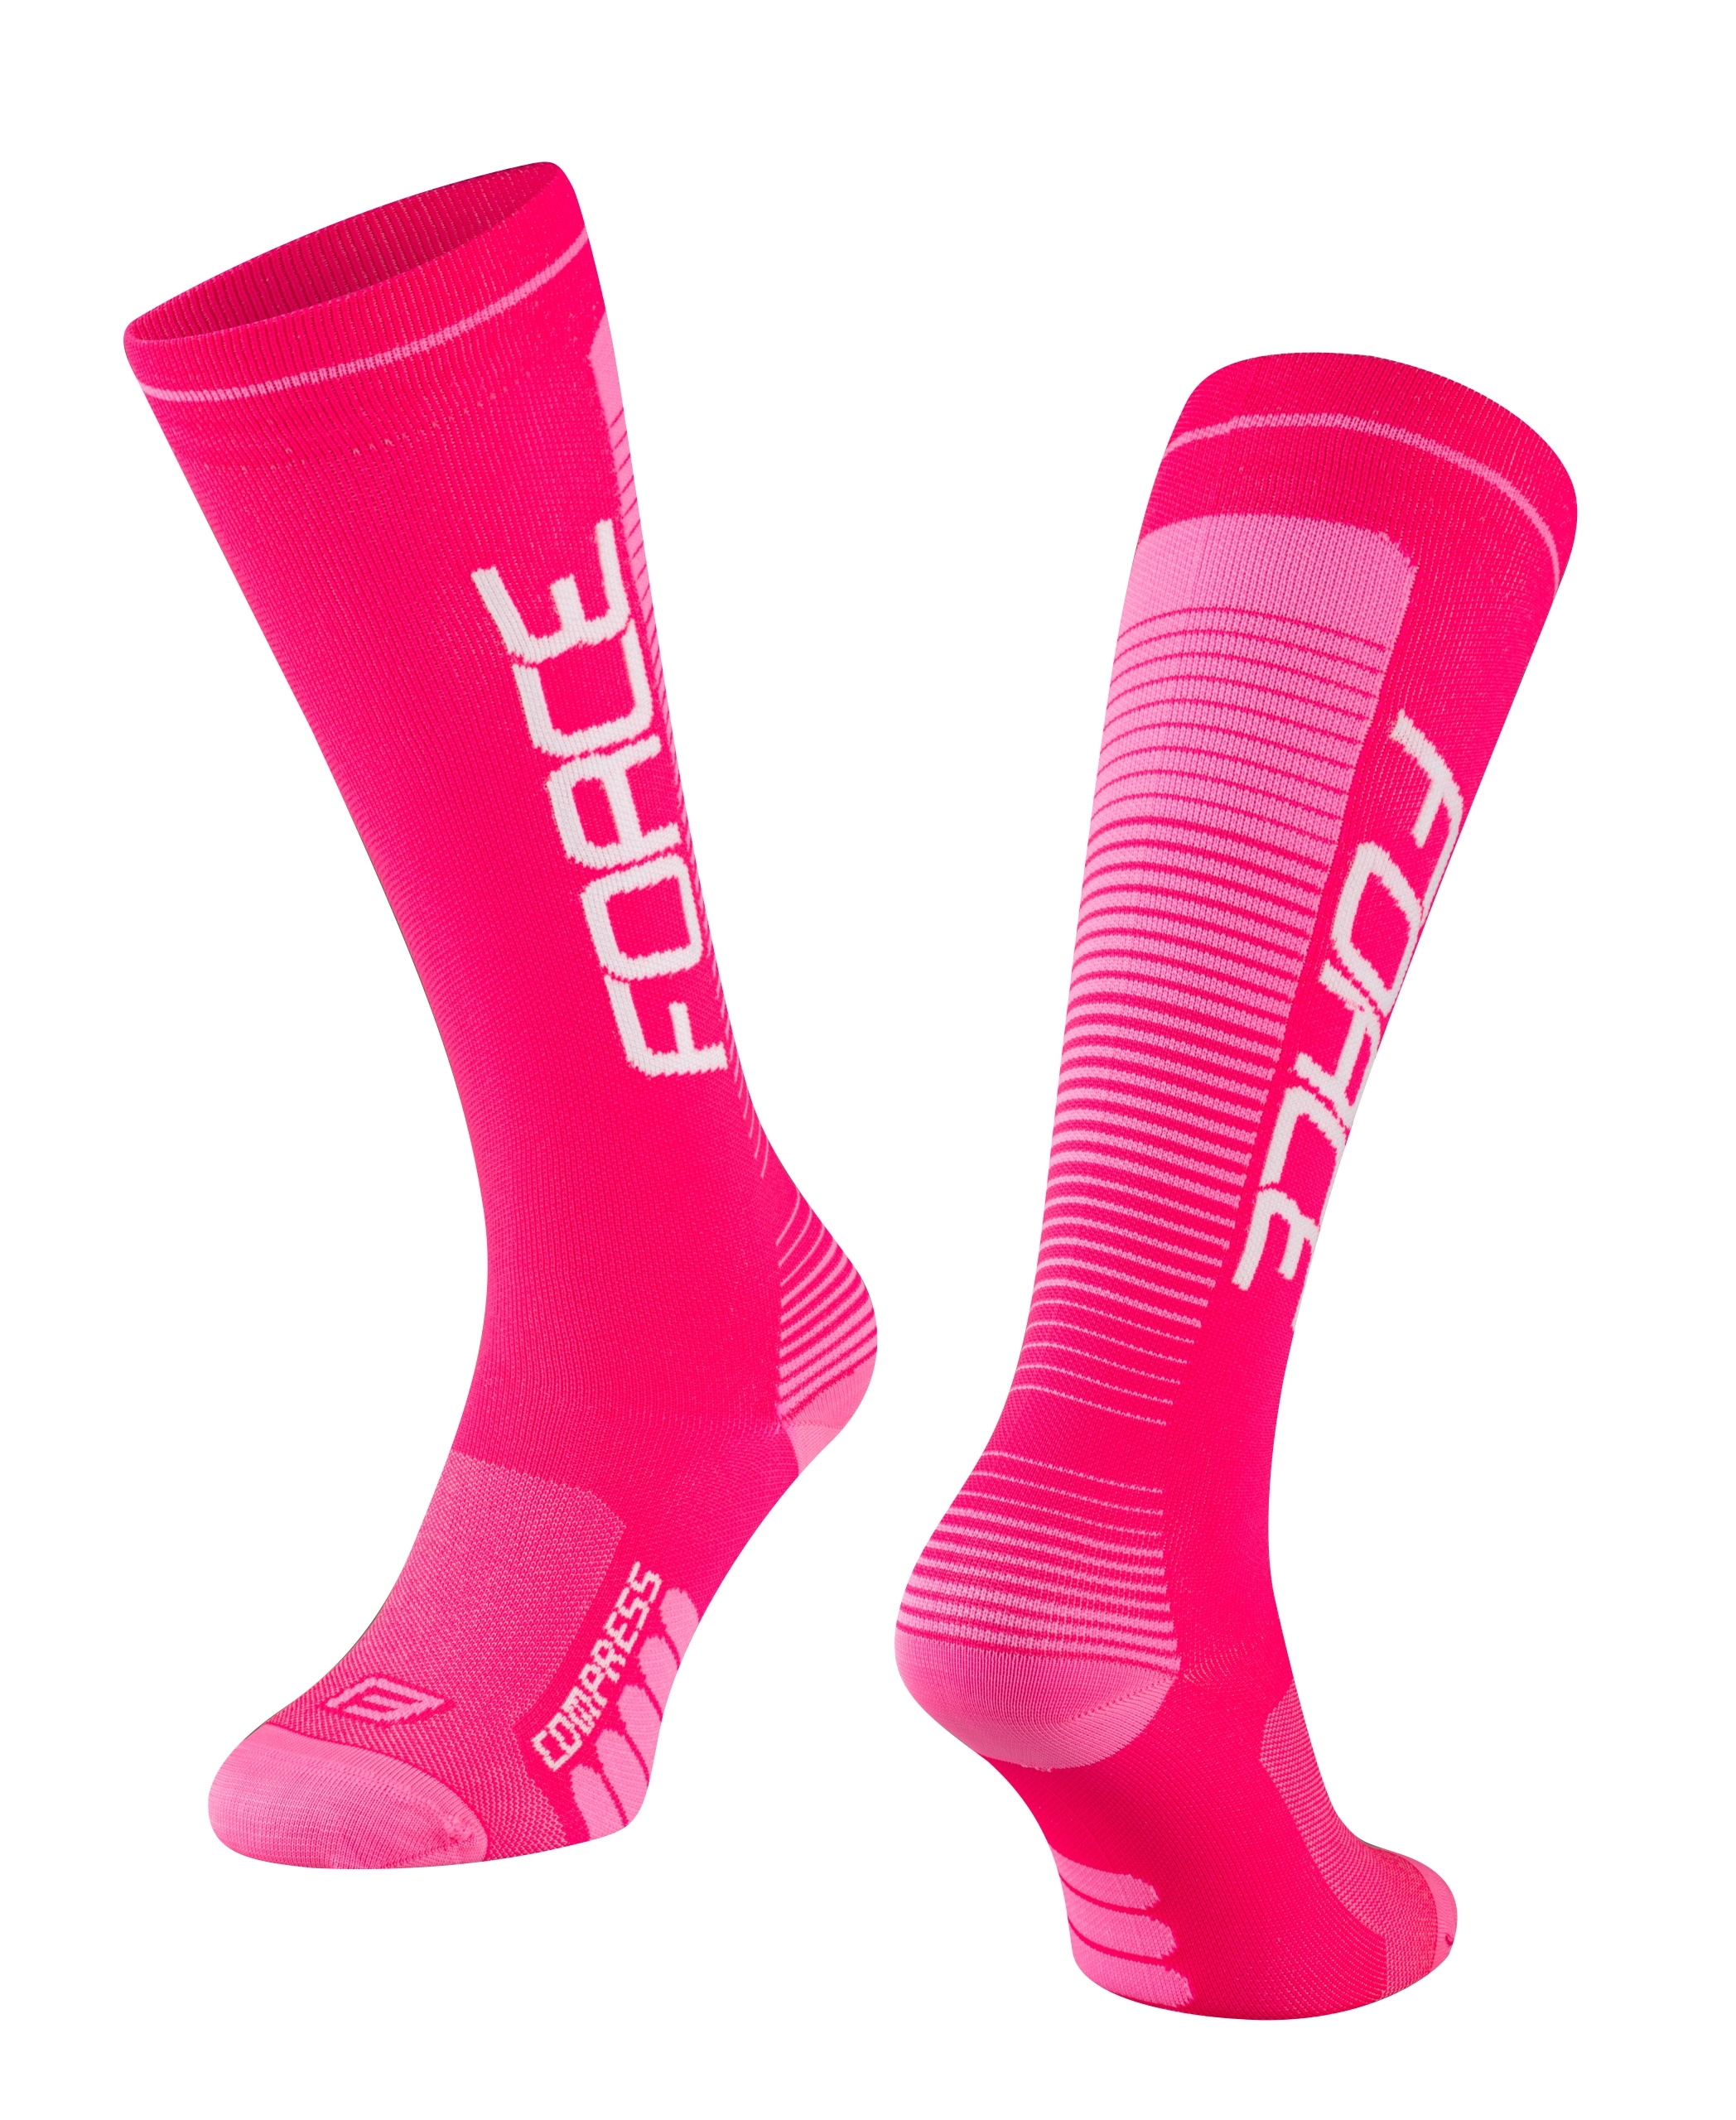 FORCE ponožky F COMPRESS, růžové S-M/36-41 Velikost: L-XL